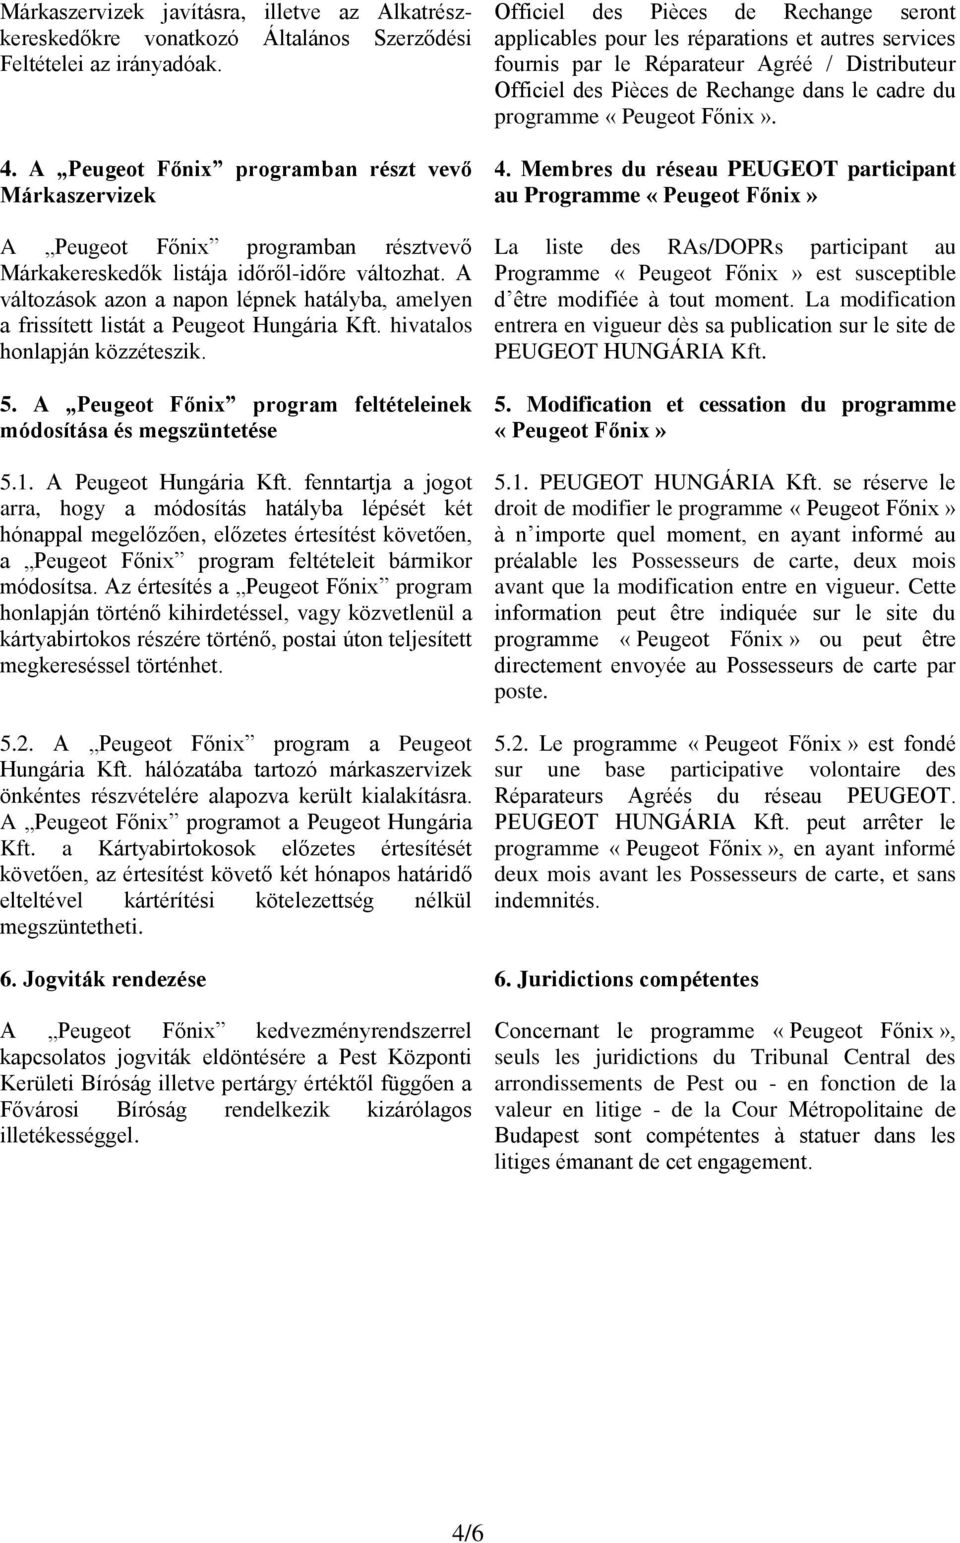 A változások azon a napon lépnek hatályba, amelyen a frissített listát a Peugeot Hungária Kft. hivatalos honlapján közzéteszik. 5. A Peugeot Főnix program feltételeinek módosítása és megszüntetése 5.